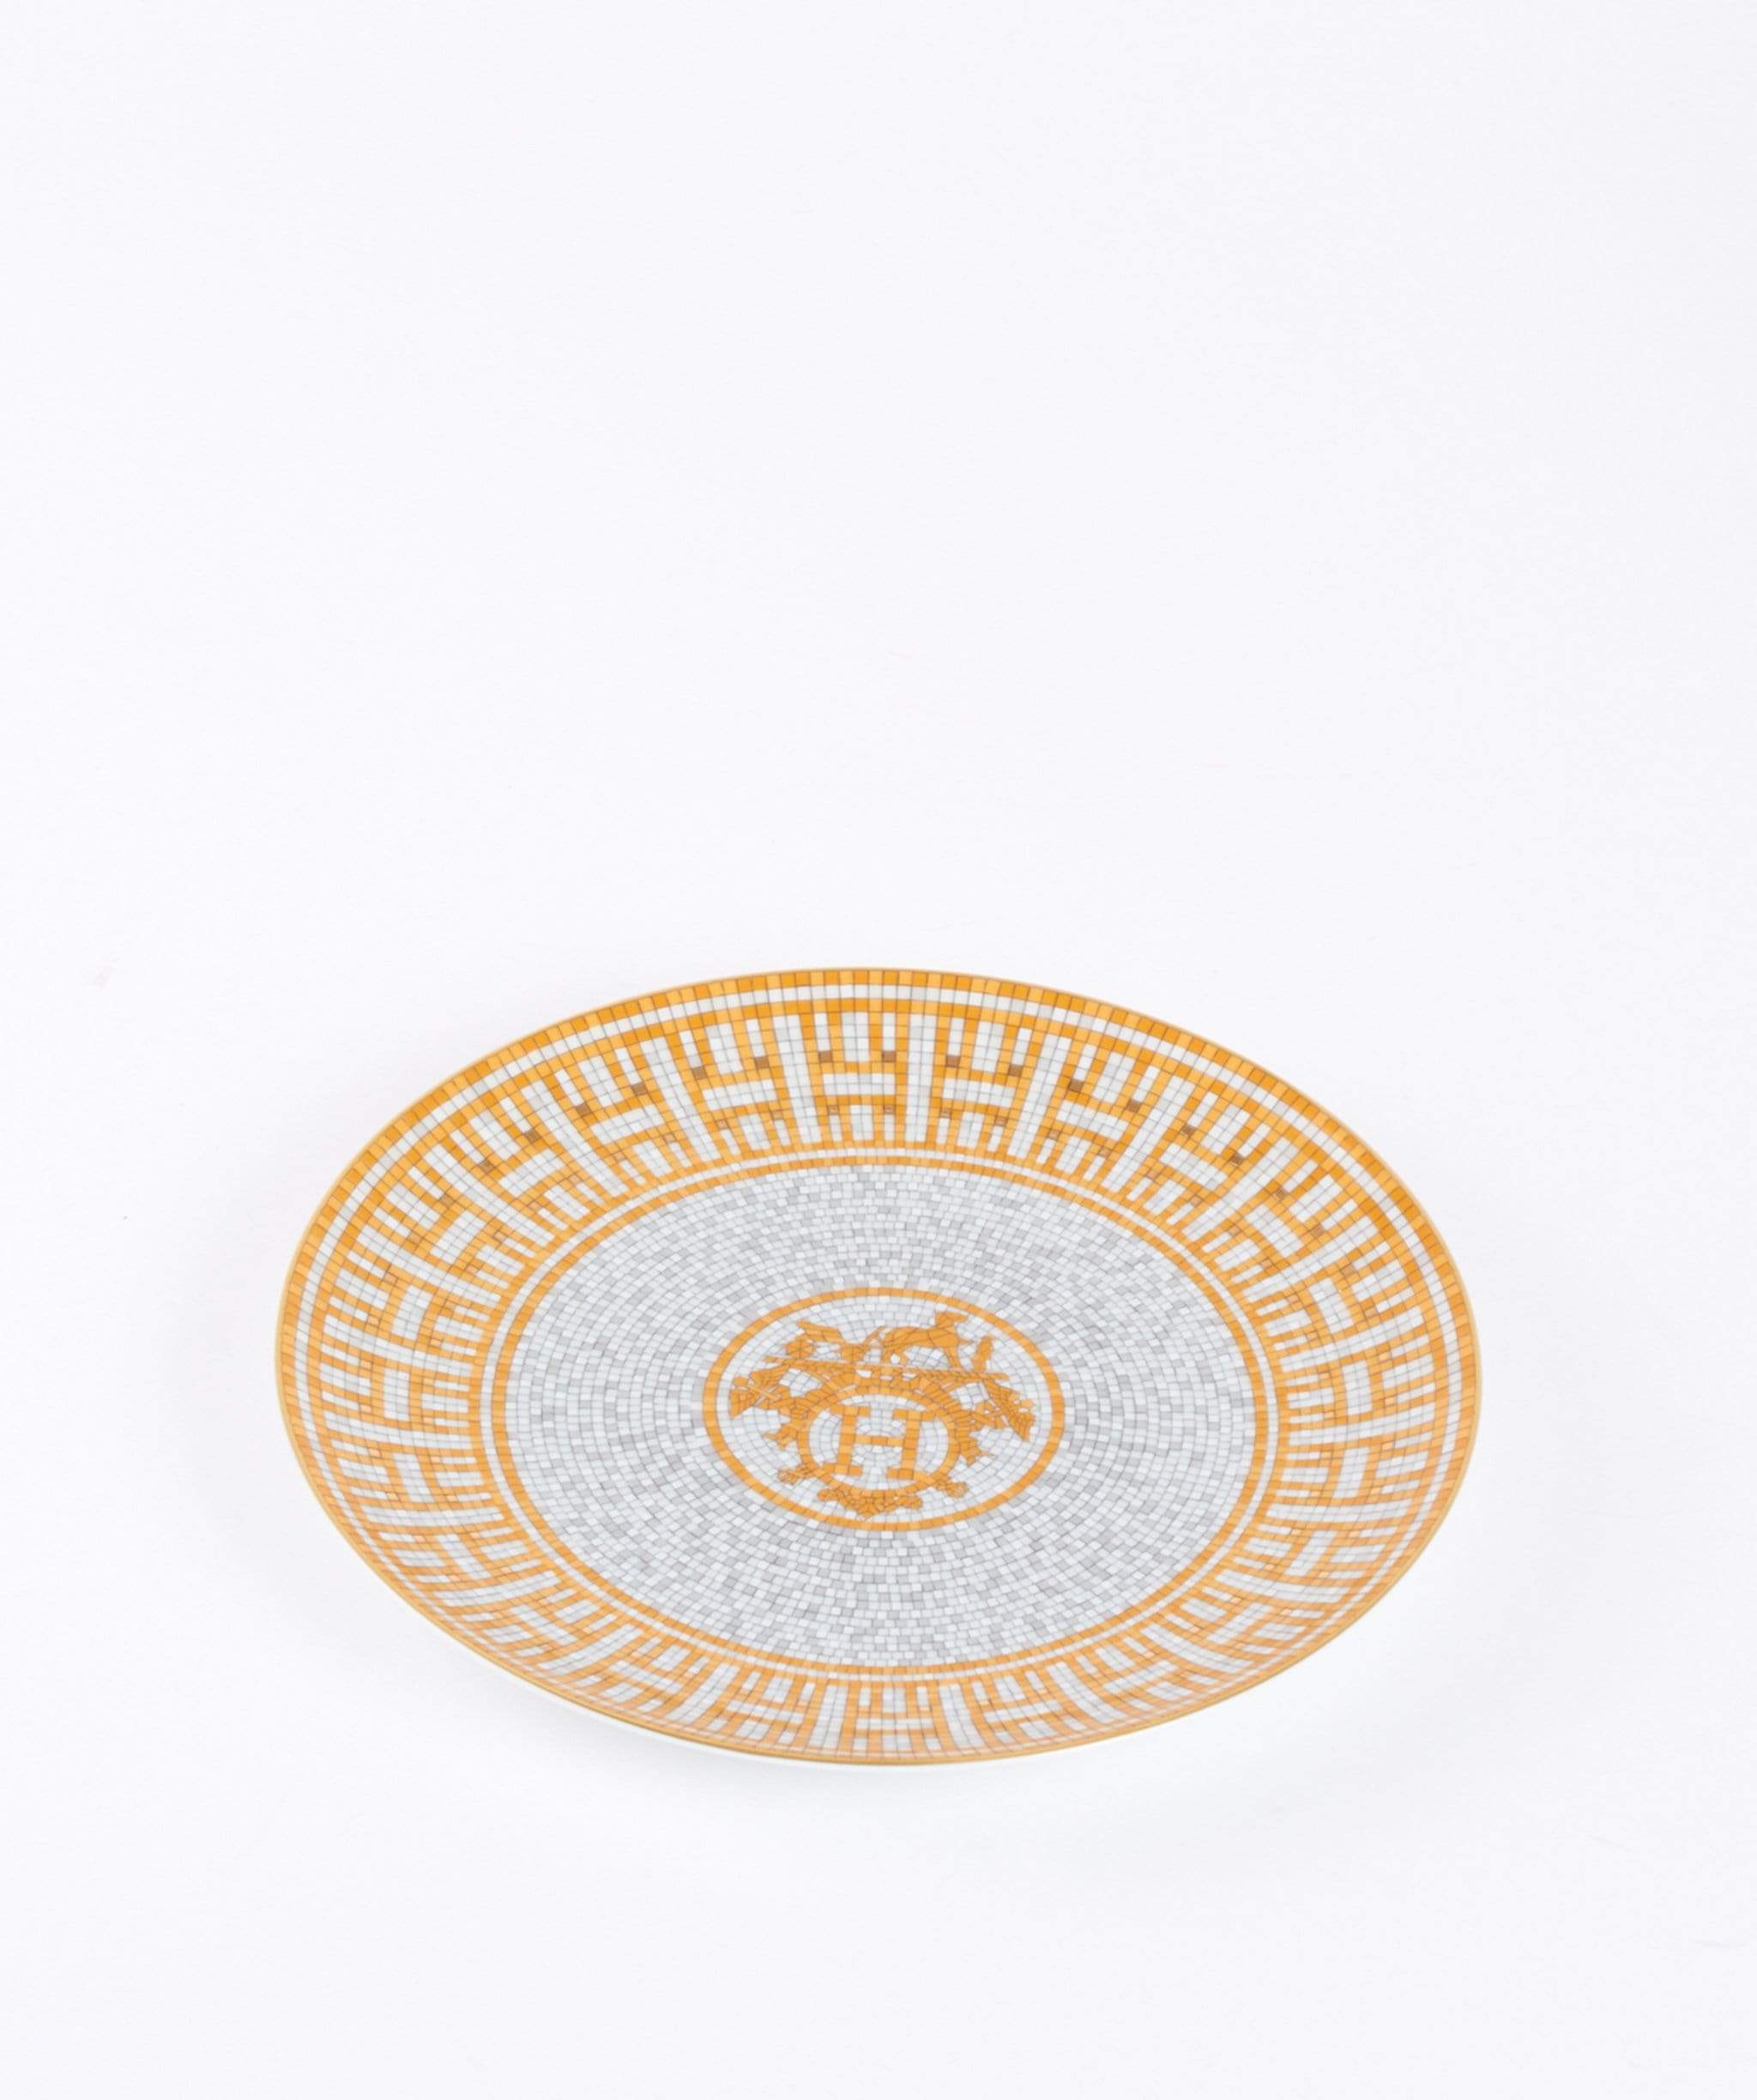 Hermès Hermès mosaique gold dessert plate